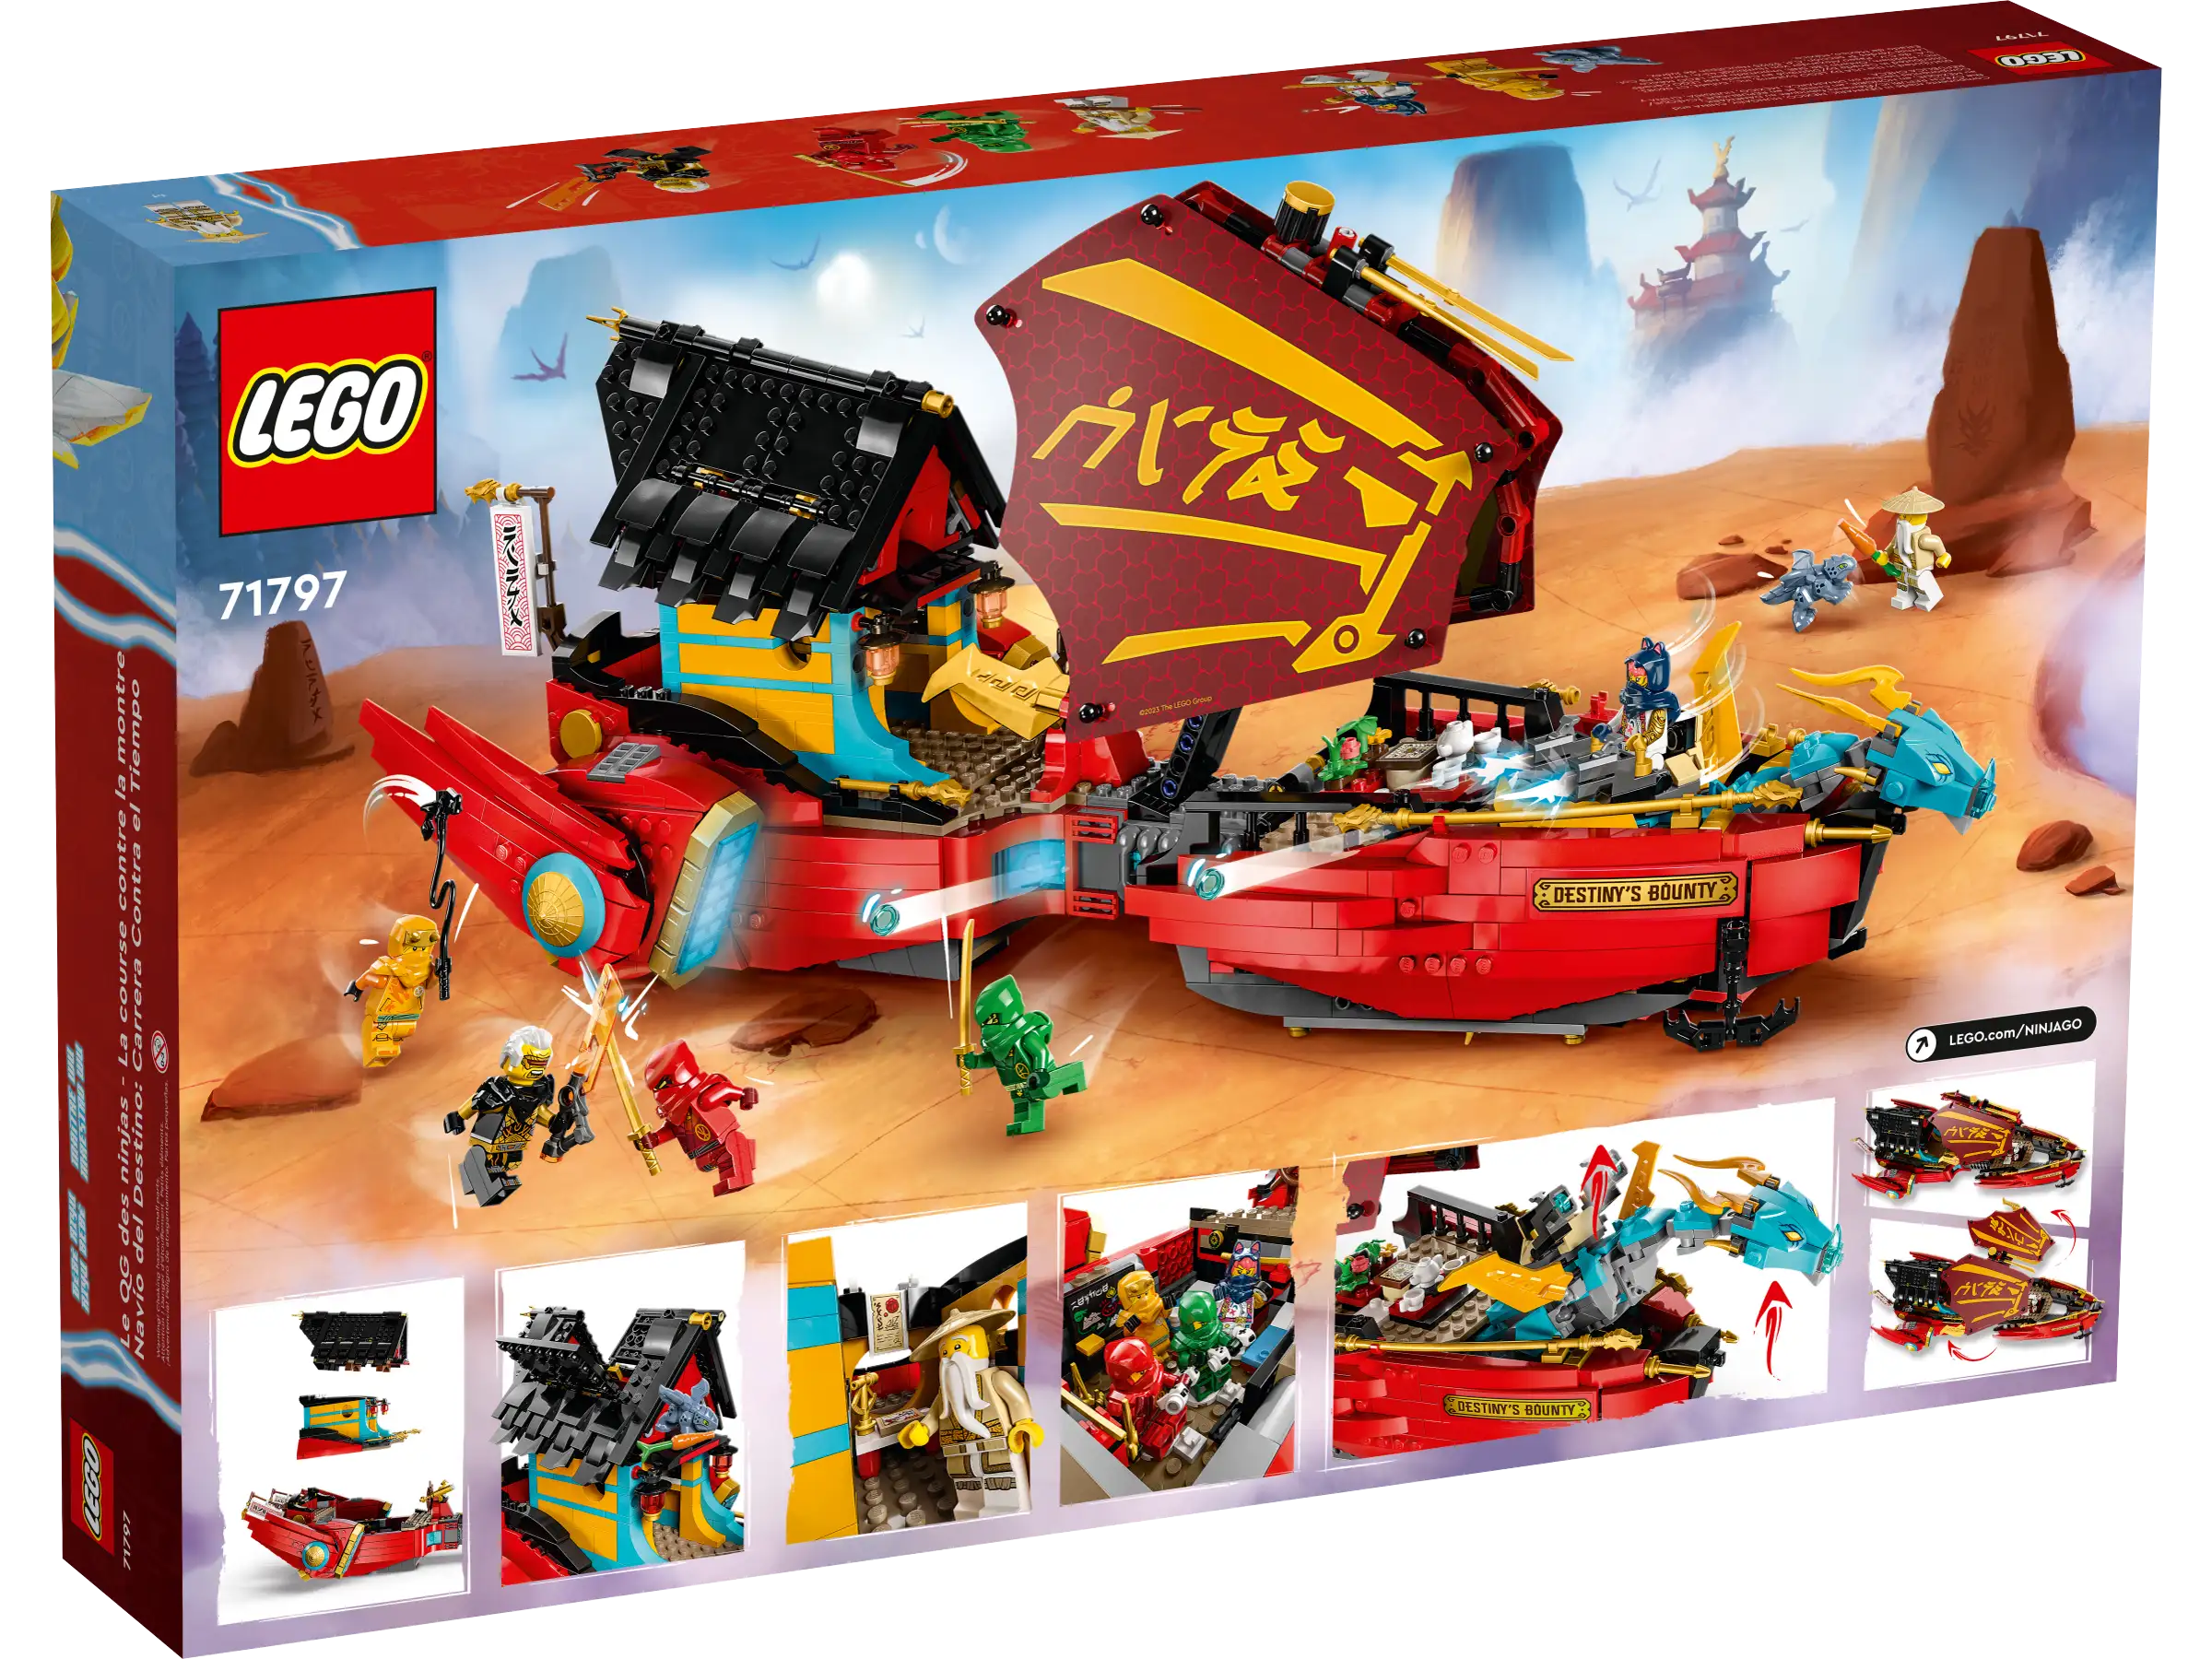 LEGO NINJAGO 71797 Destinys Bounty – race against time 11